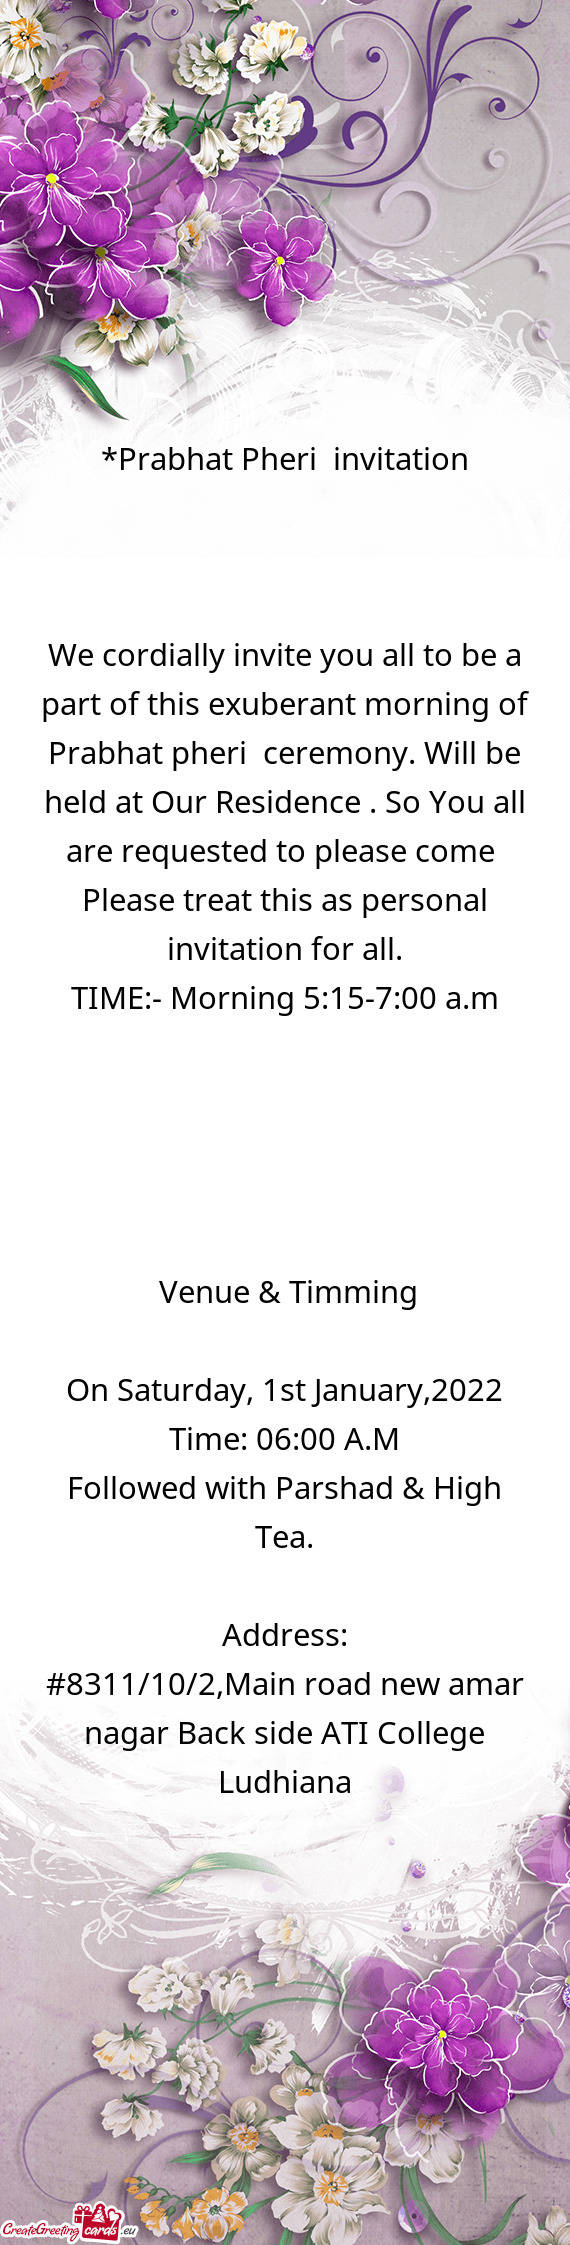 Prabhat Pheri invitation